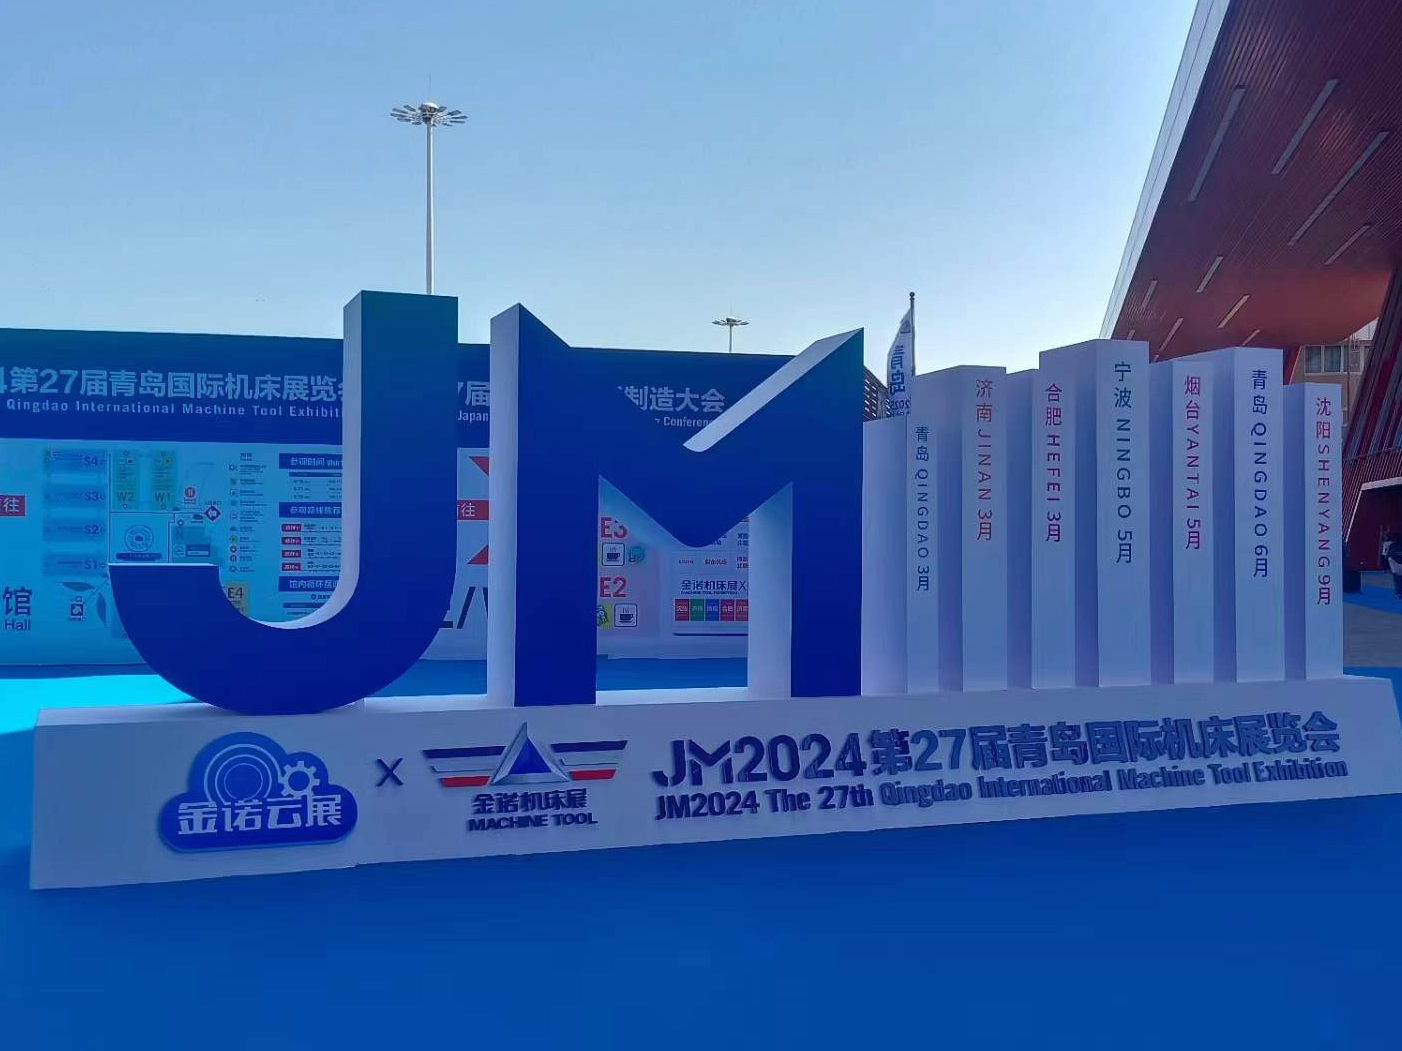 JM2024 La 27ª Exposición Internacional de Máquinas Herramienta de Qingdao